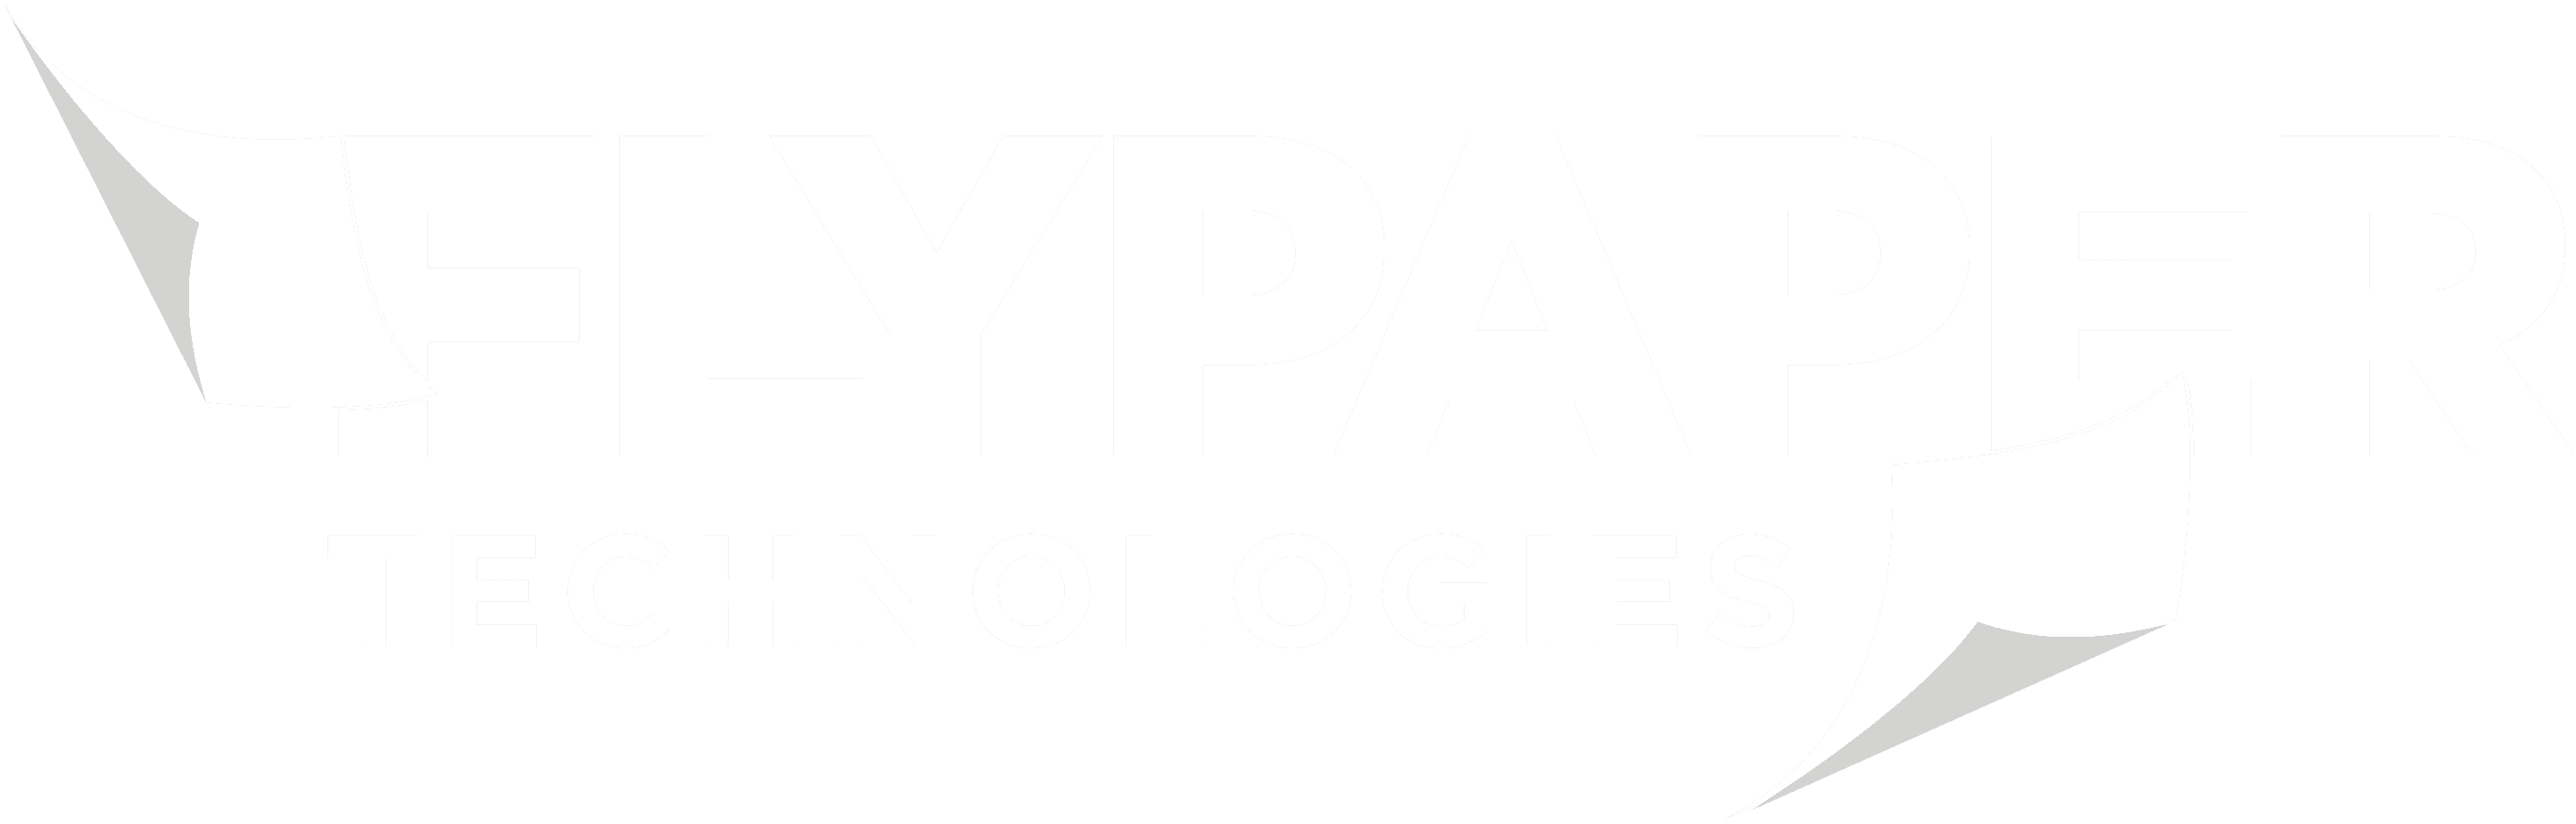 FlyPaper tecnologías logo blanco